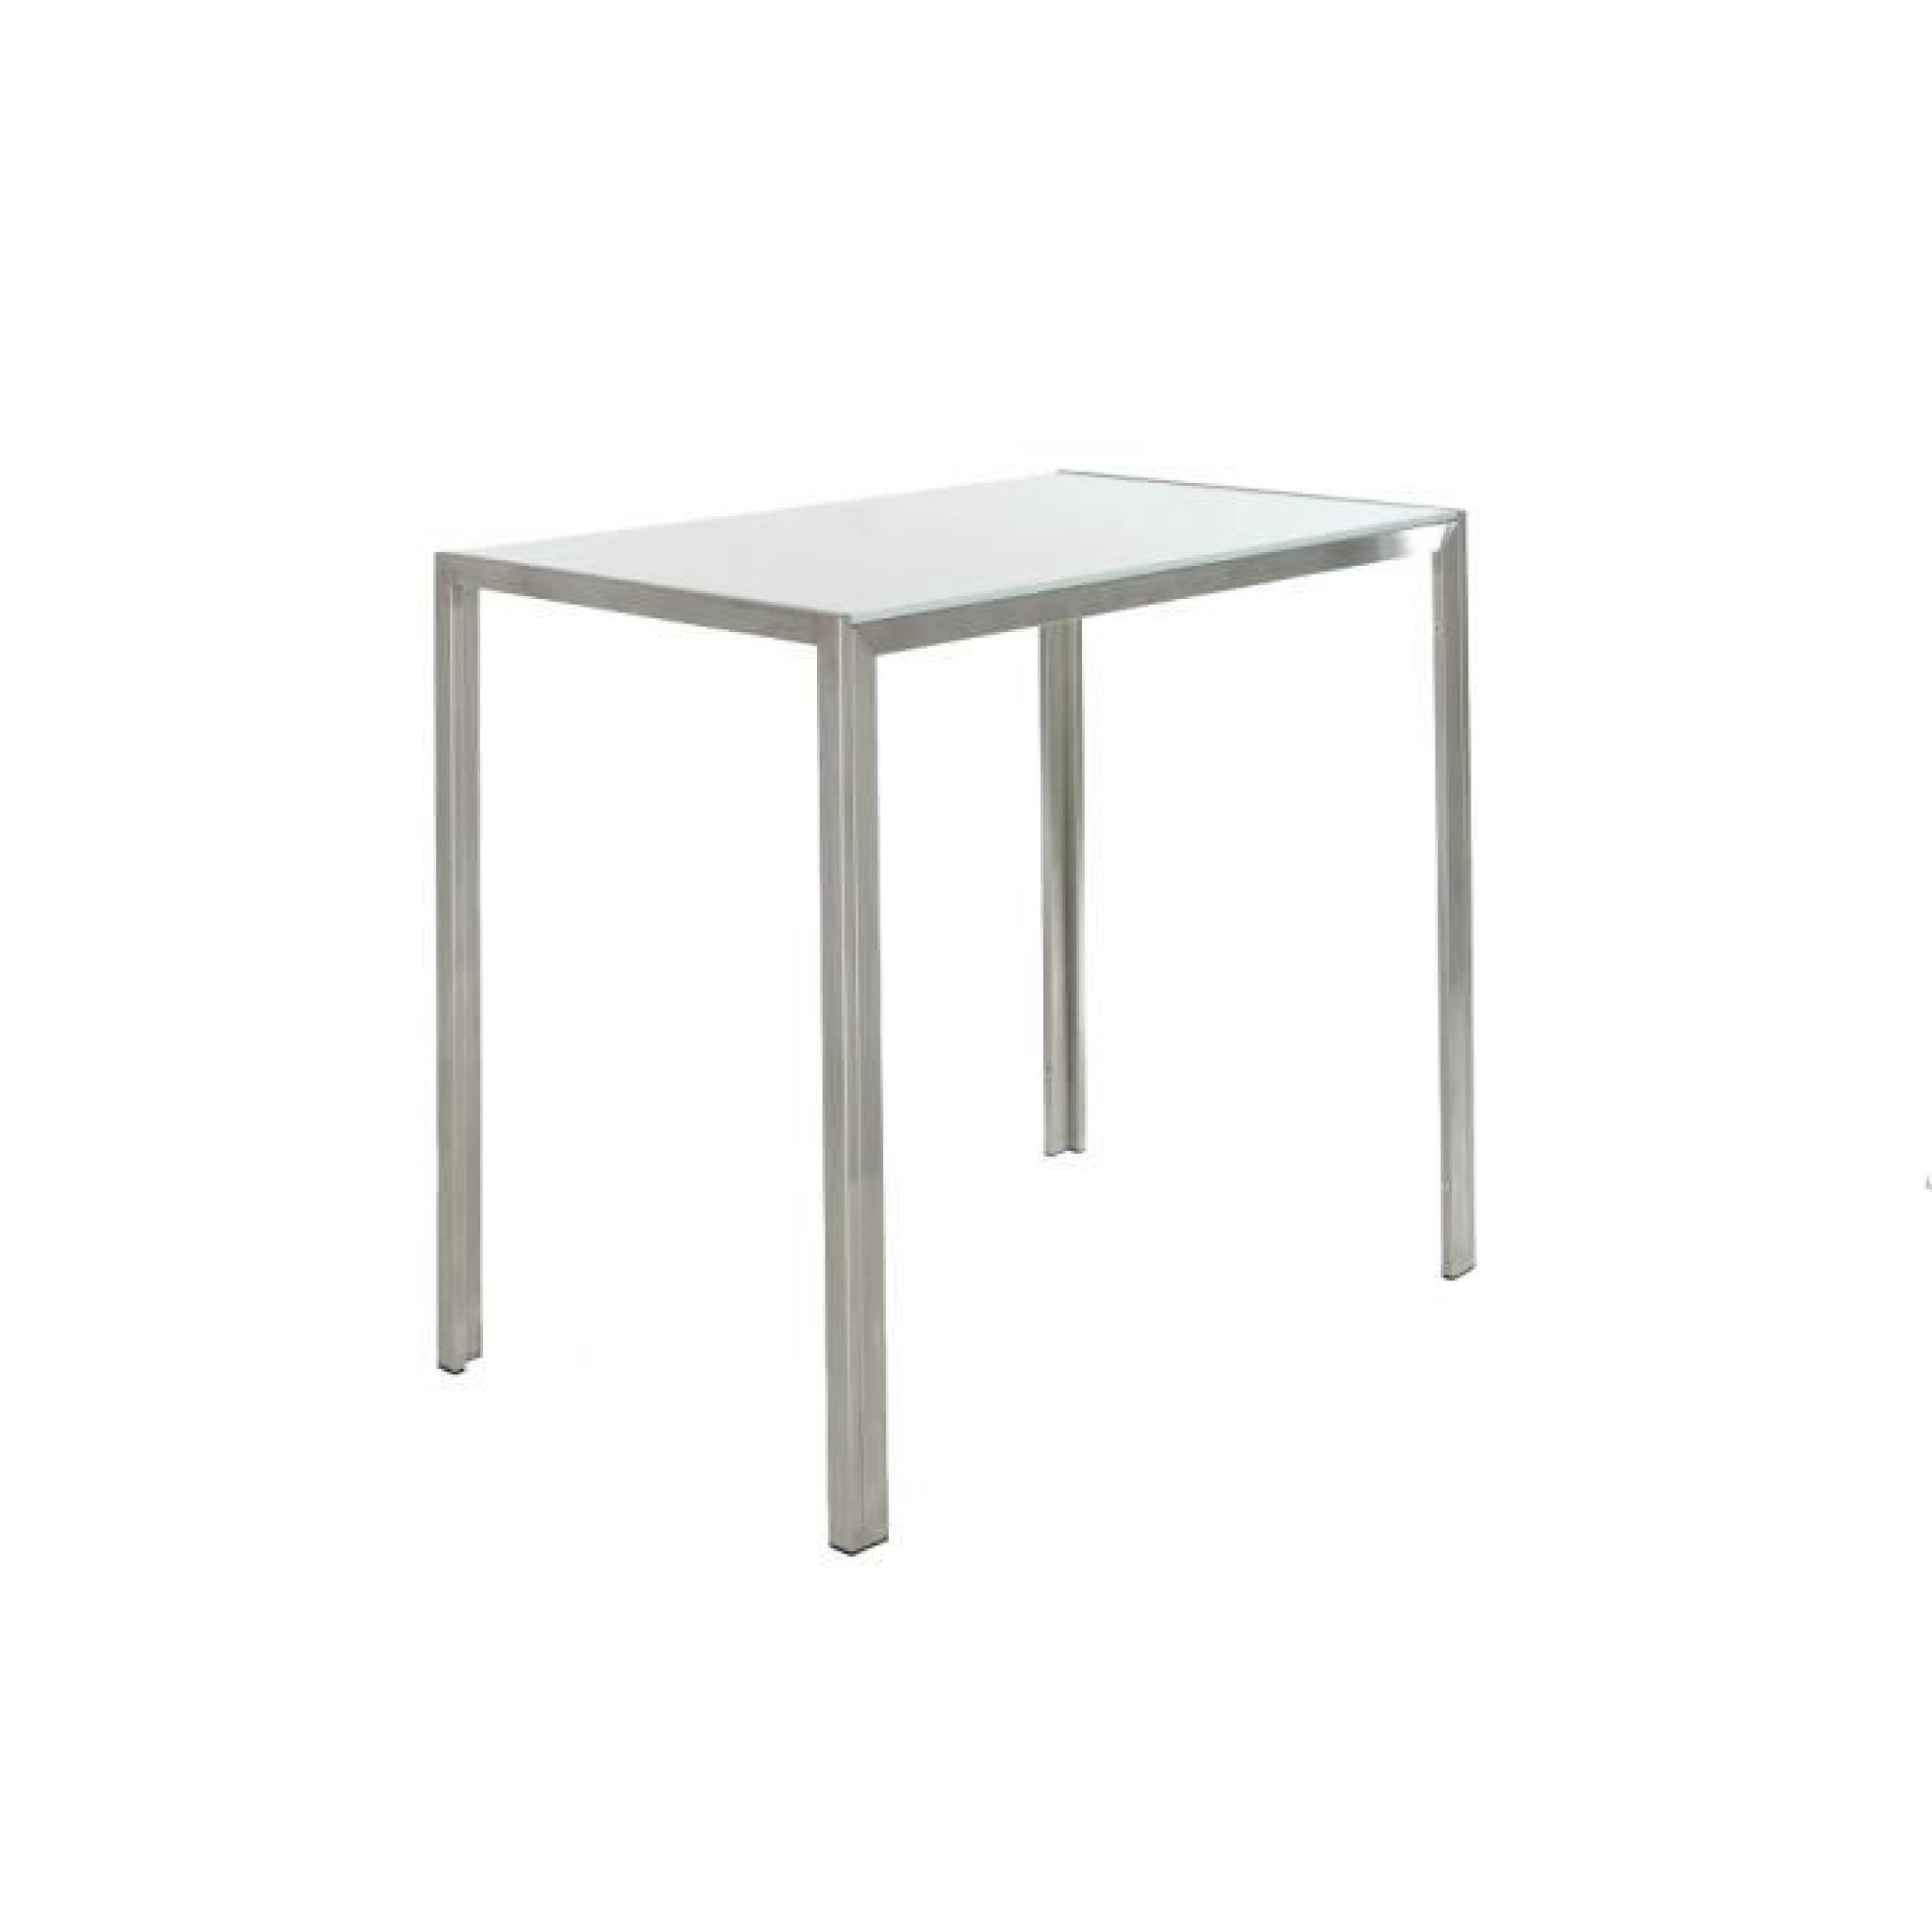 CLP Table haute massive SALVADOR, avec plateau en verre de 5 mm, acier 100% inoxydable, hauteur 110 cm, largeur 120 cm